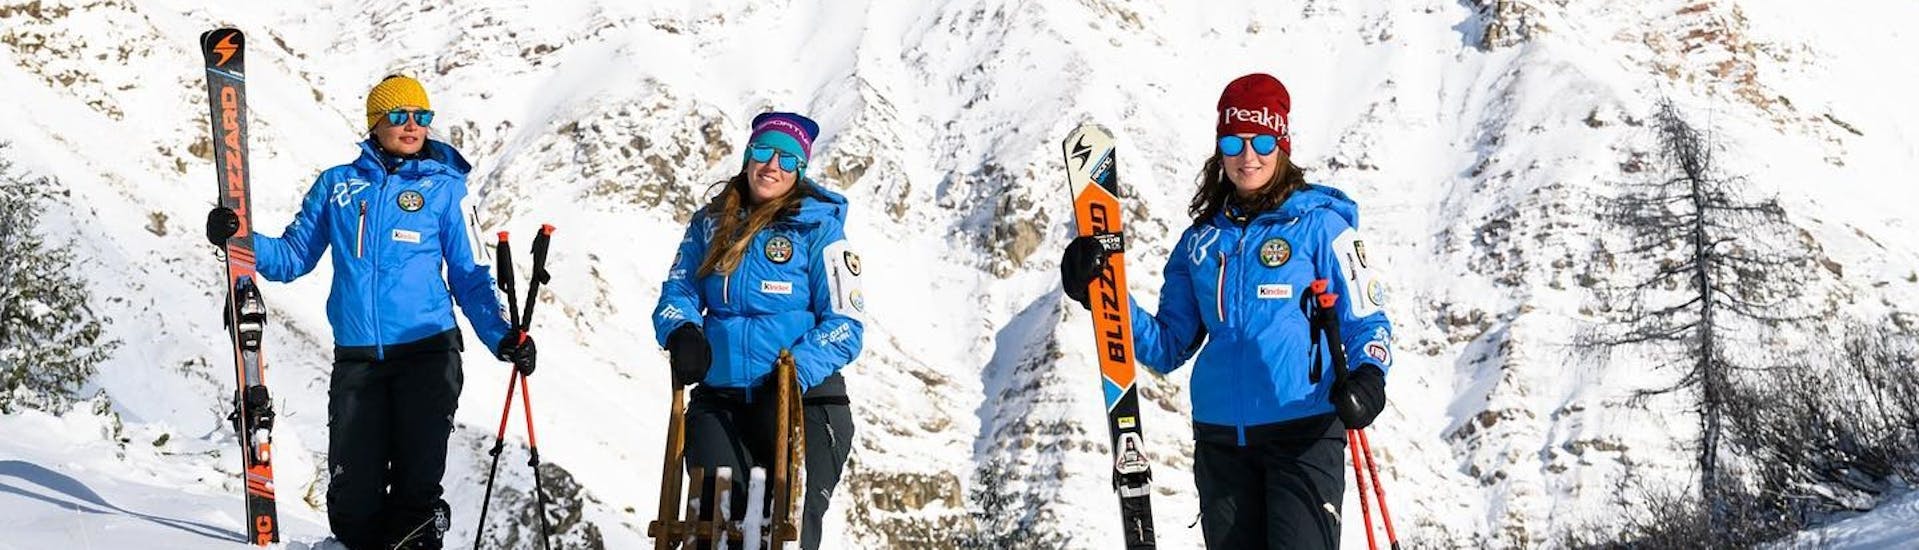 Cours particulier de ski Adultes dès 16 ans pour Tous niveaux.